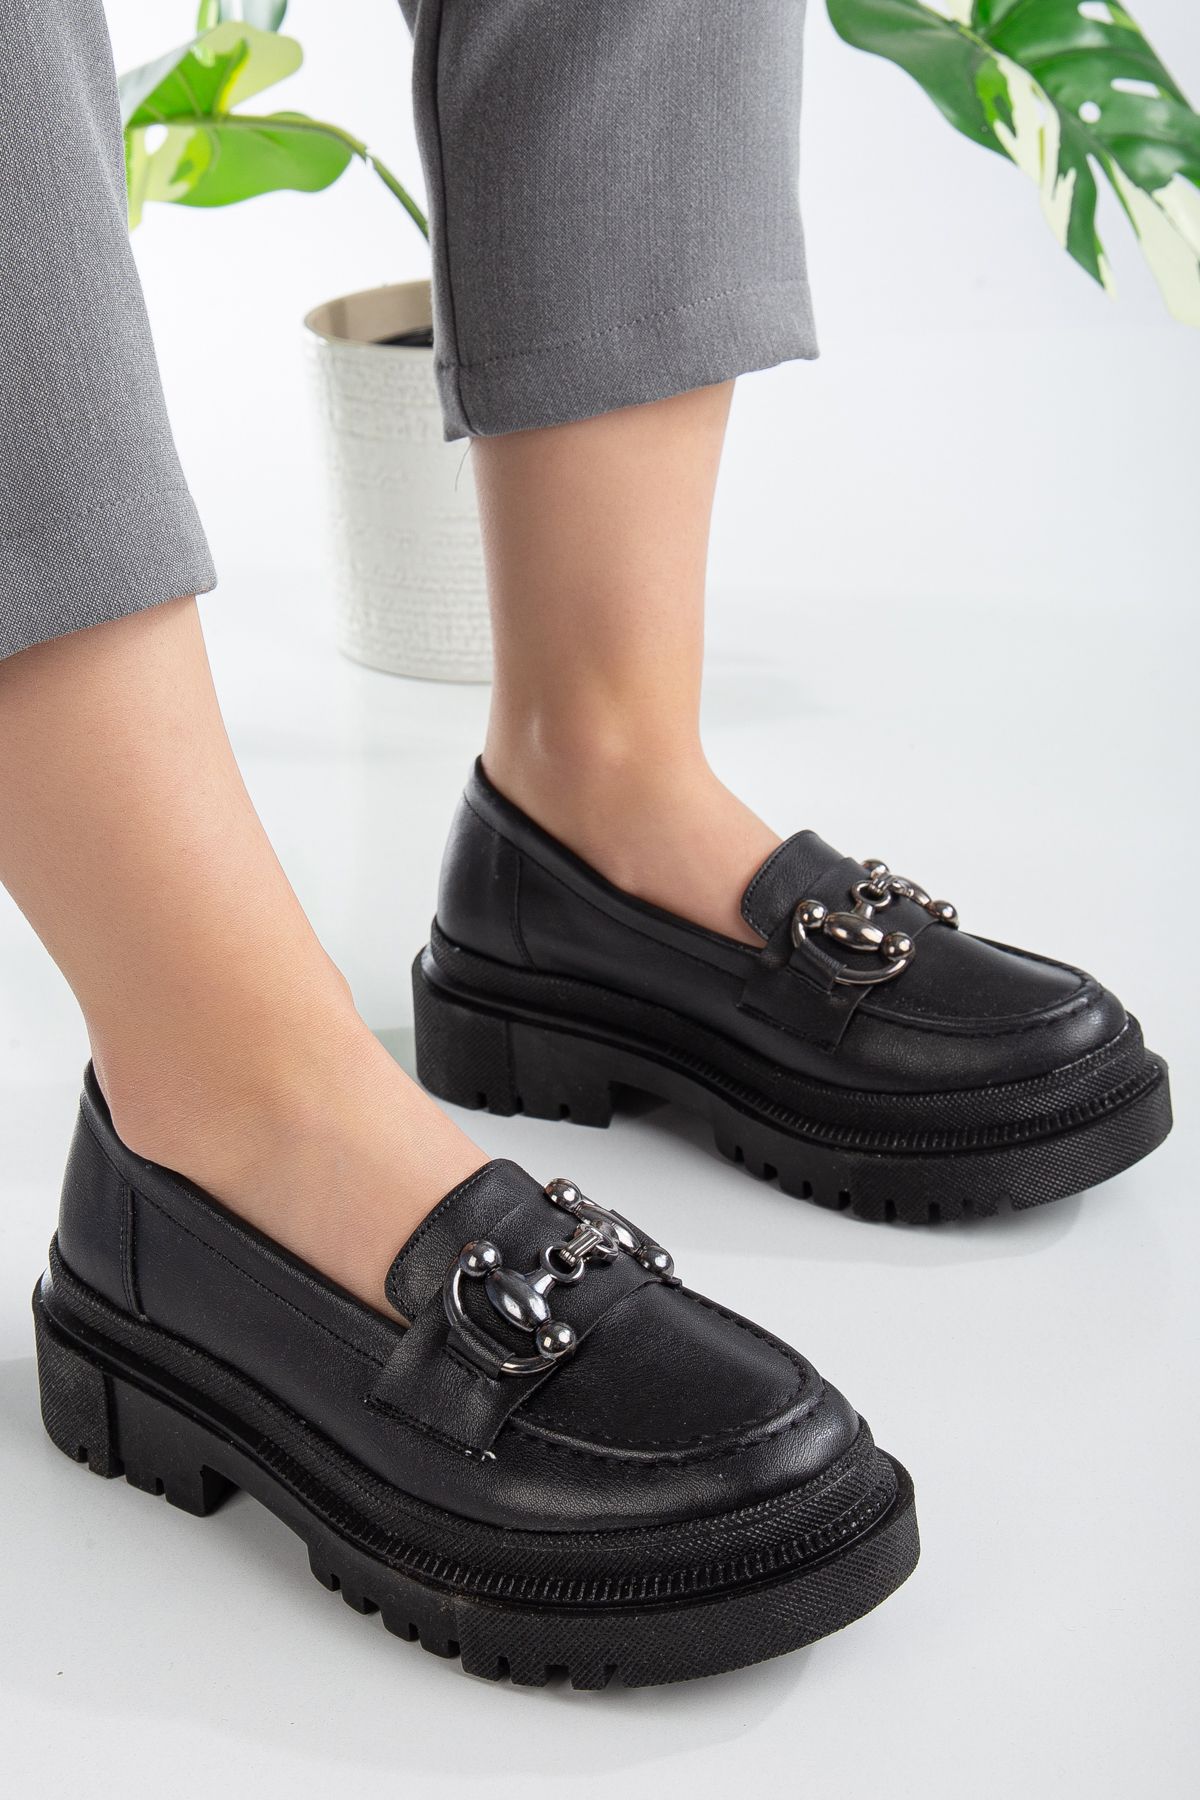 kabkabi Kadın Ortopedik Taban Cilt Siyah Tokalı Günlük Klasik Ayakkabı